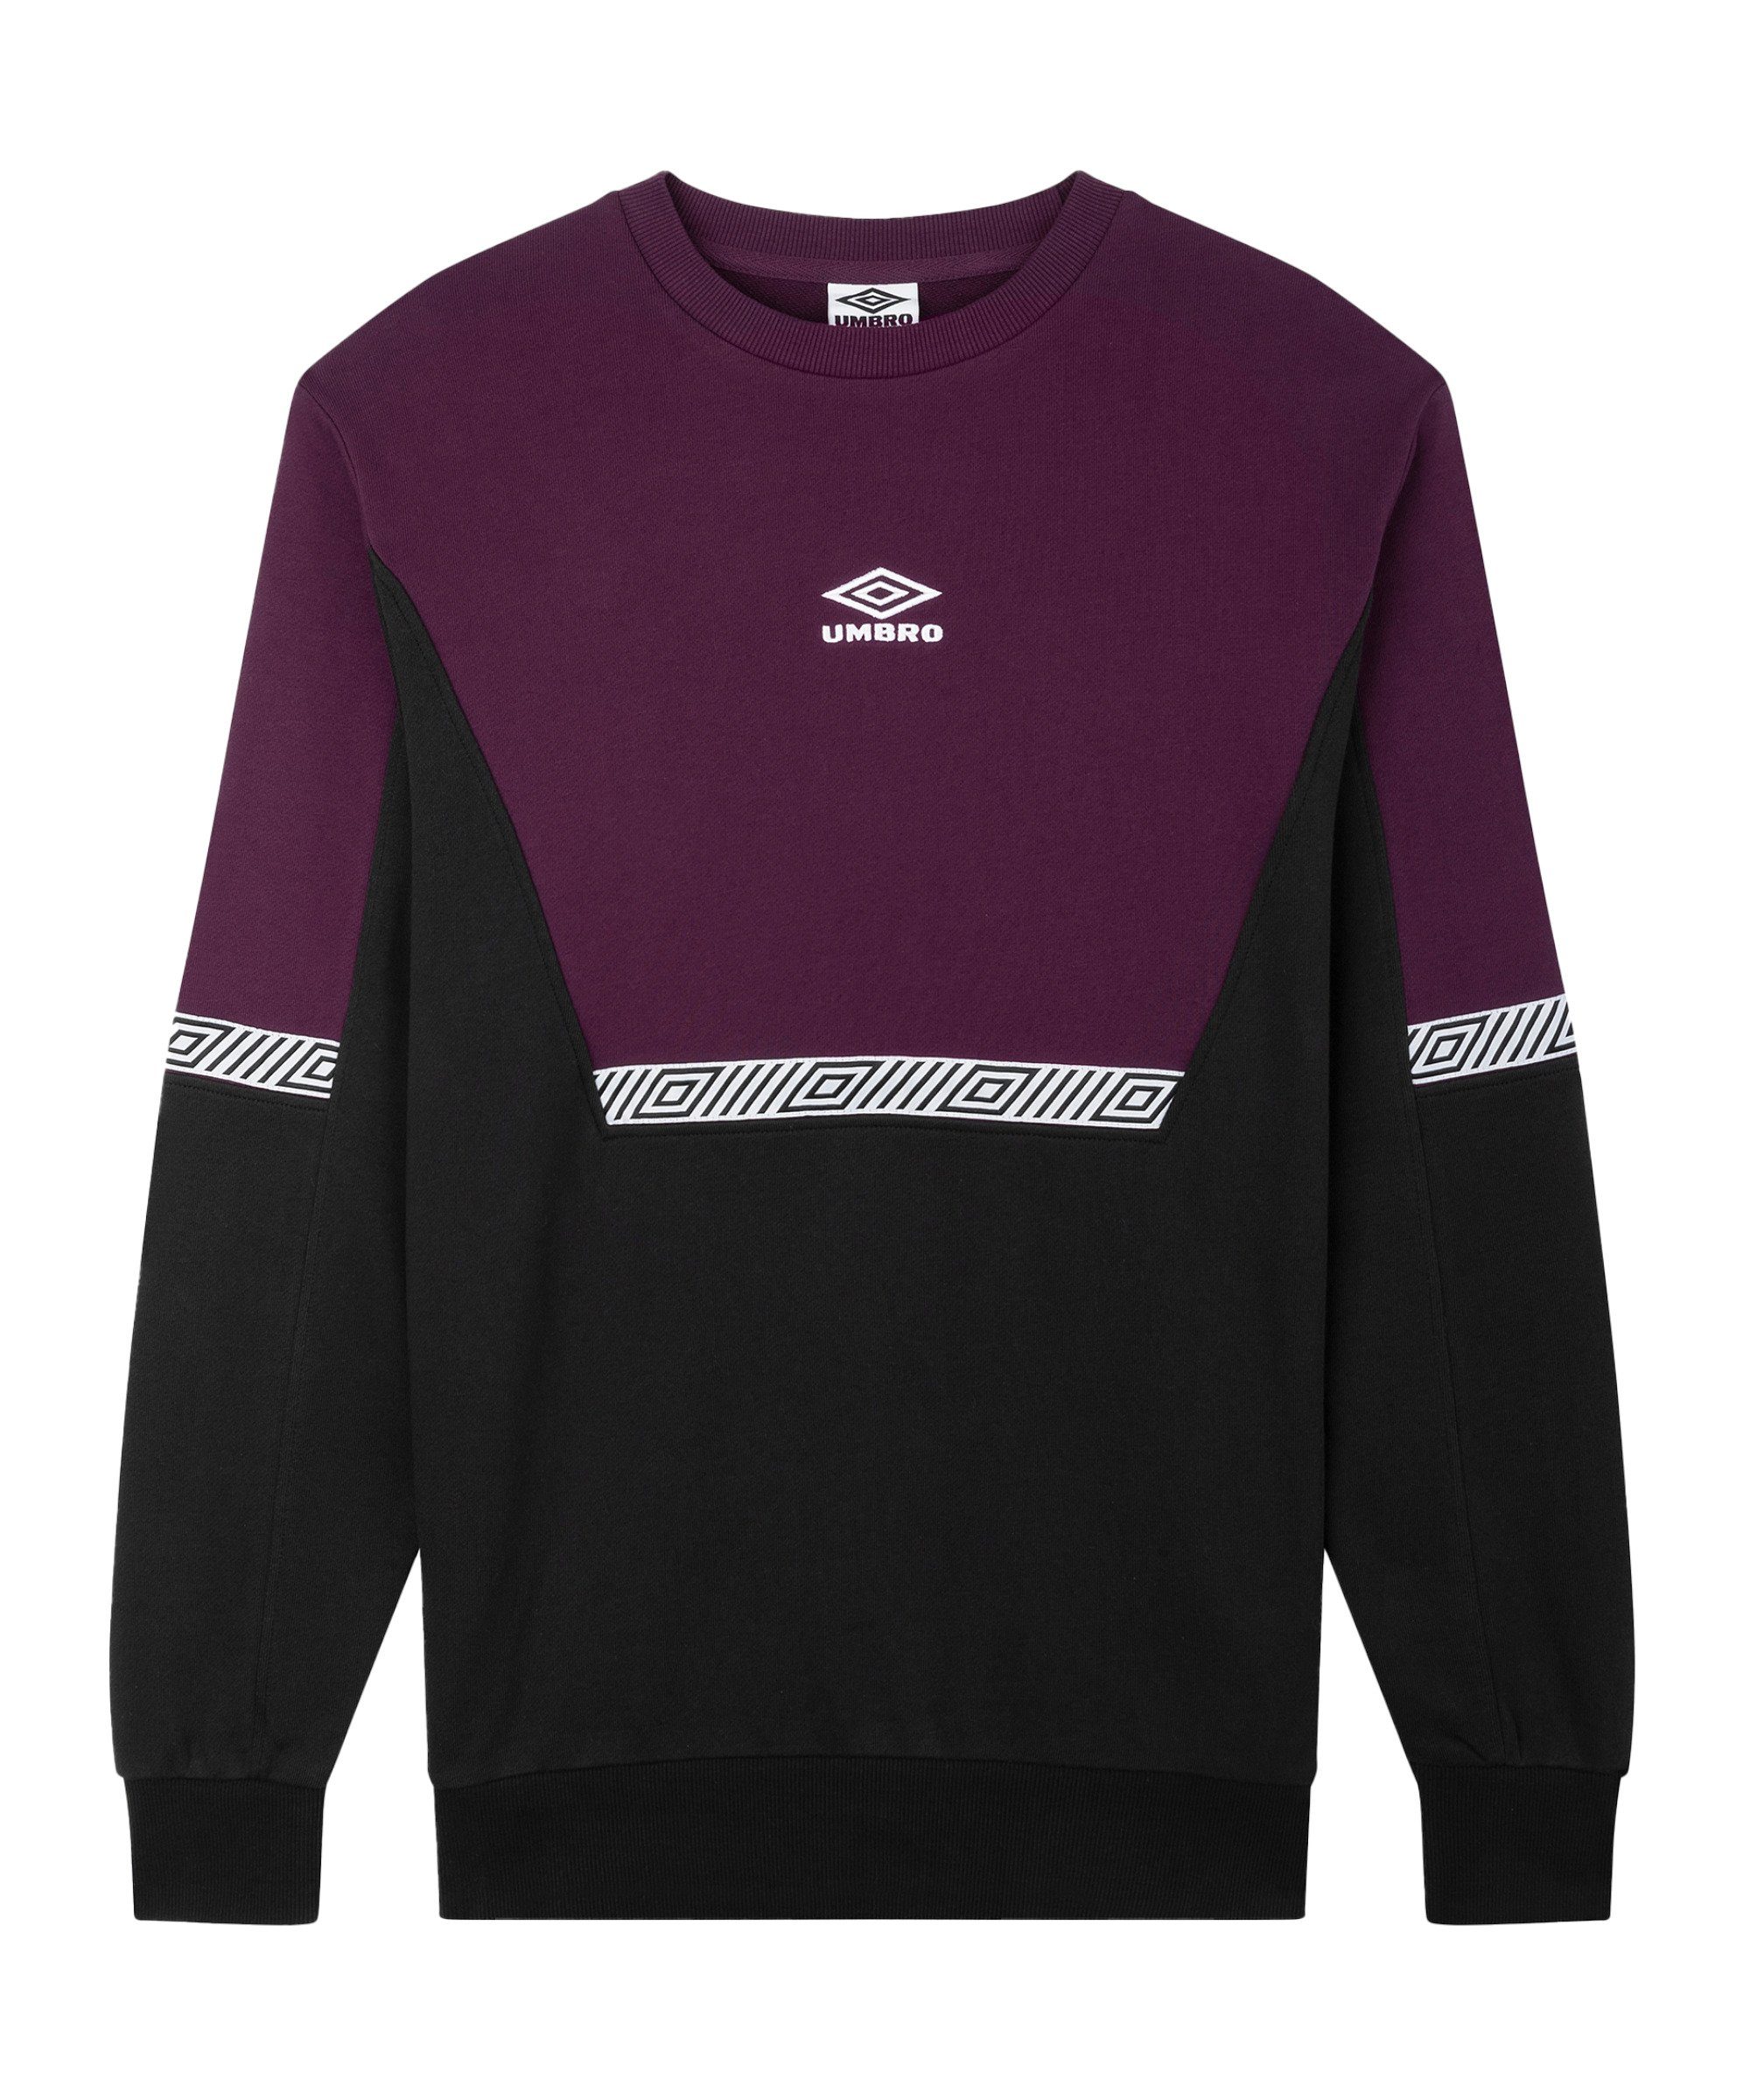 Style Umbro schwarzlila Club Sweatshirt Sweatshirt Sports